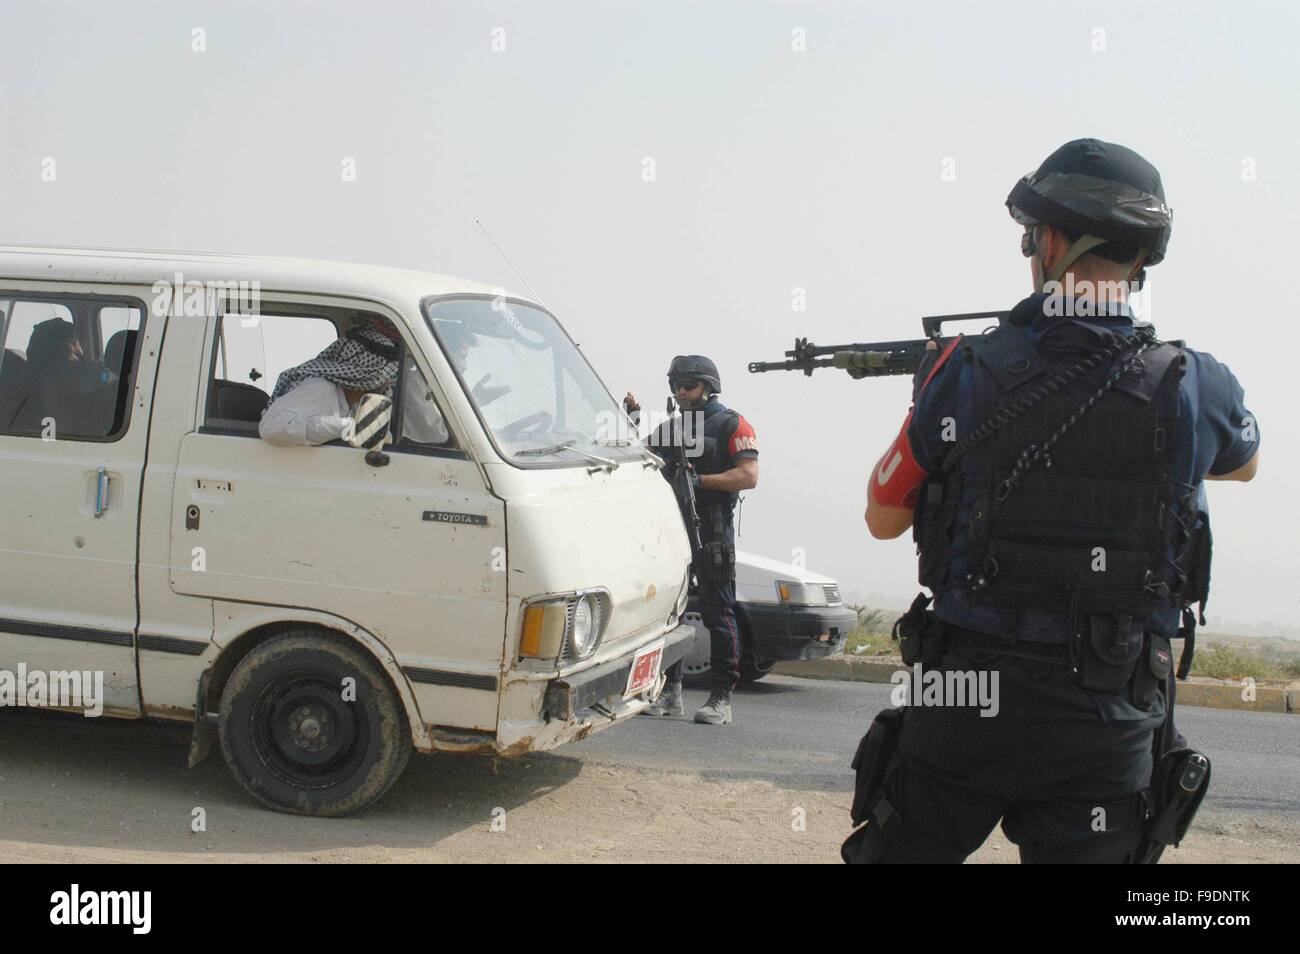 Italiano di un intervento militare in Iraq (10/2004), Checkpoint di Carabinieri (italiano la polizia militare) alla periferia di Nassiriya Foto Stock